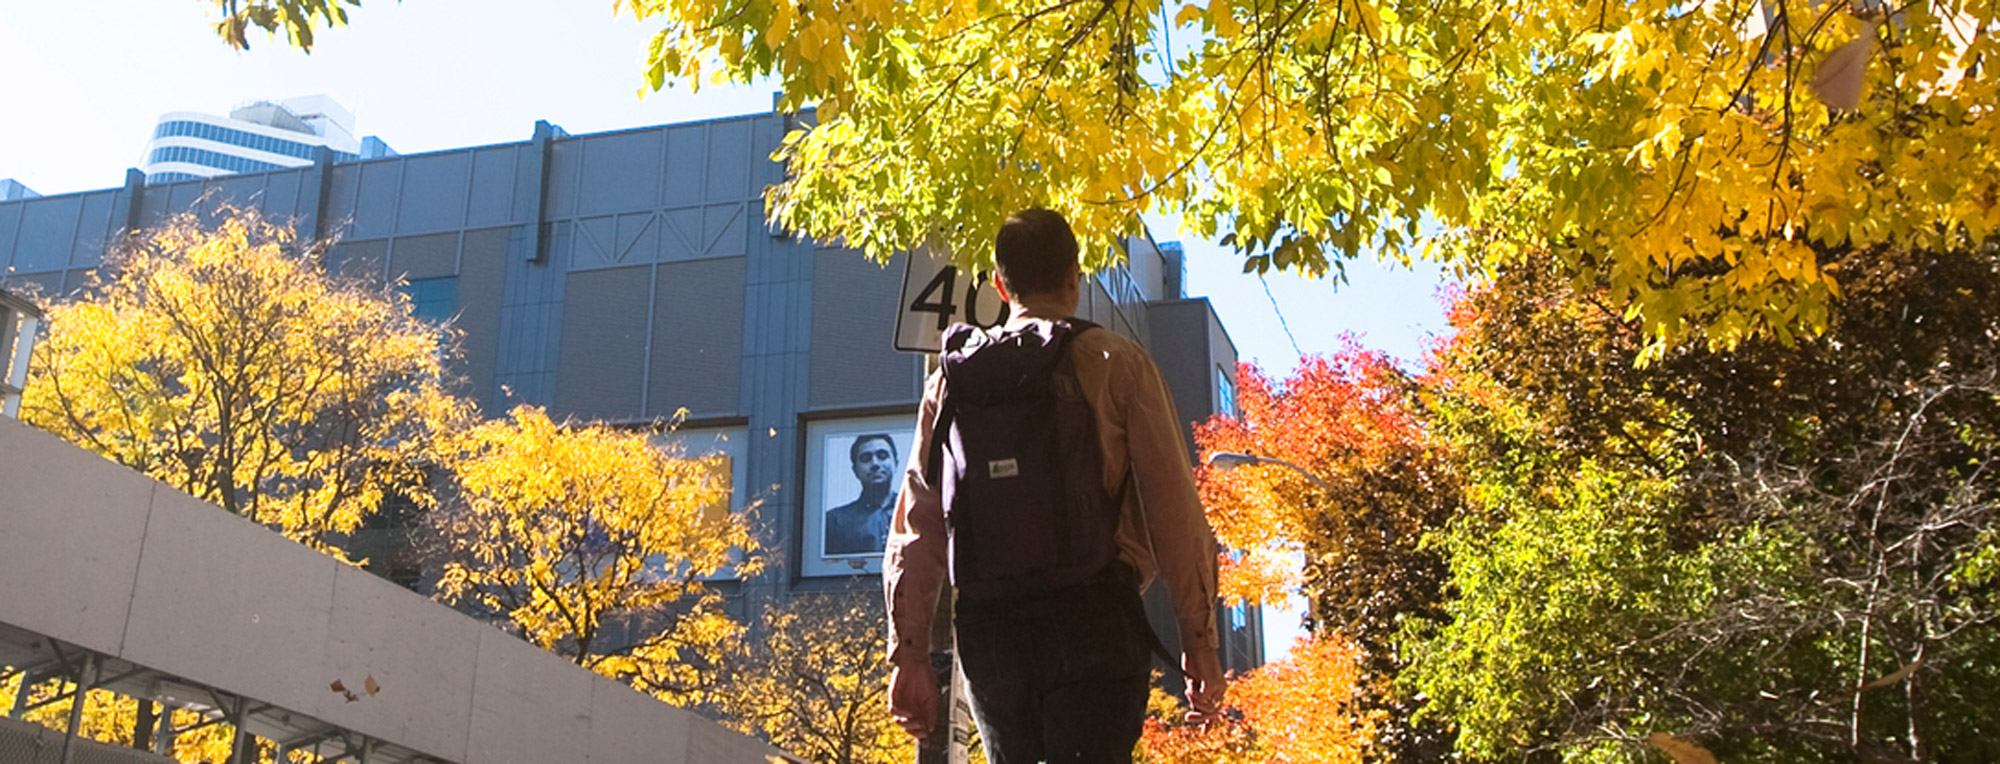 student gazing up while walking through campus